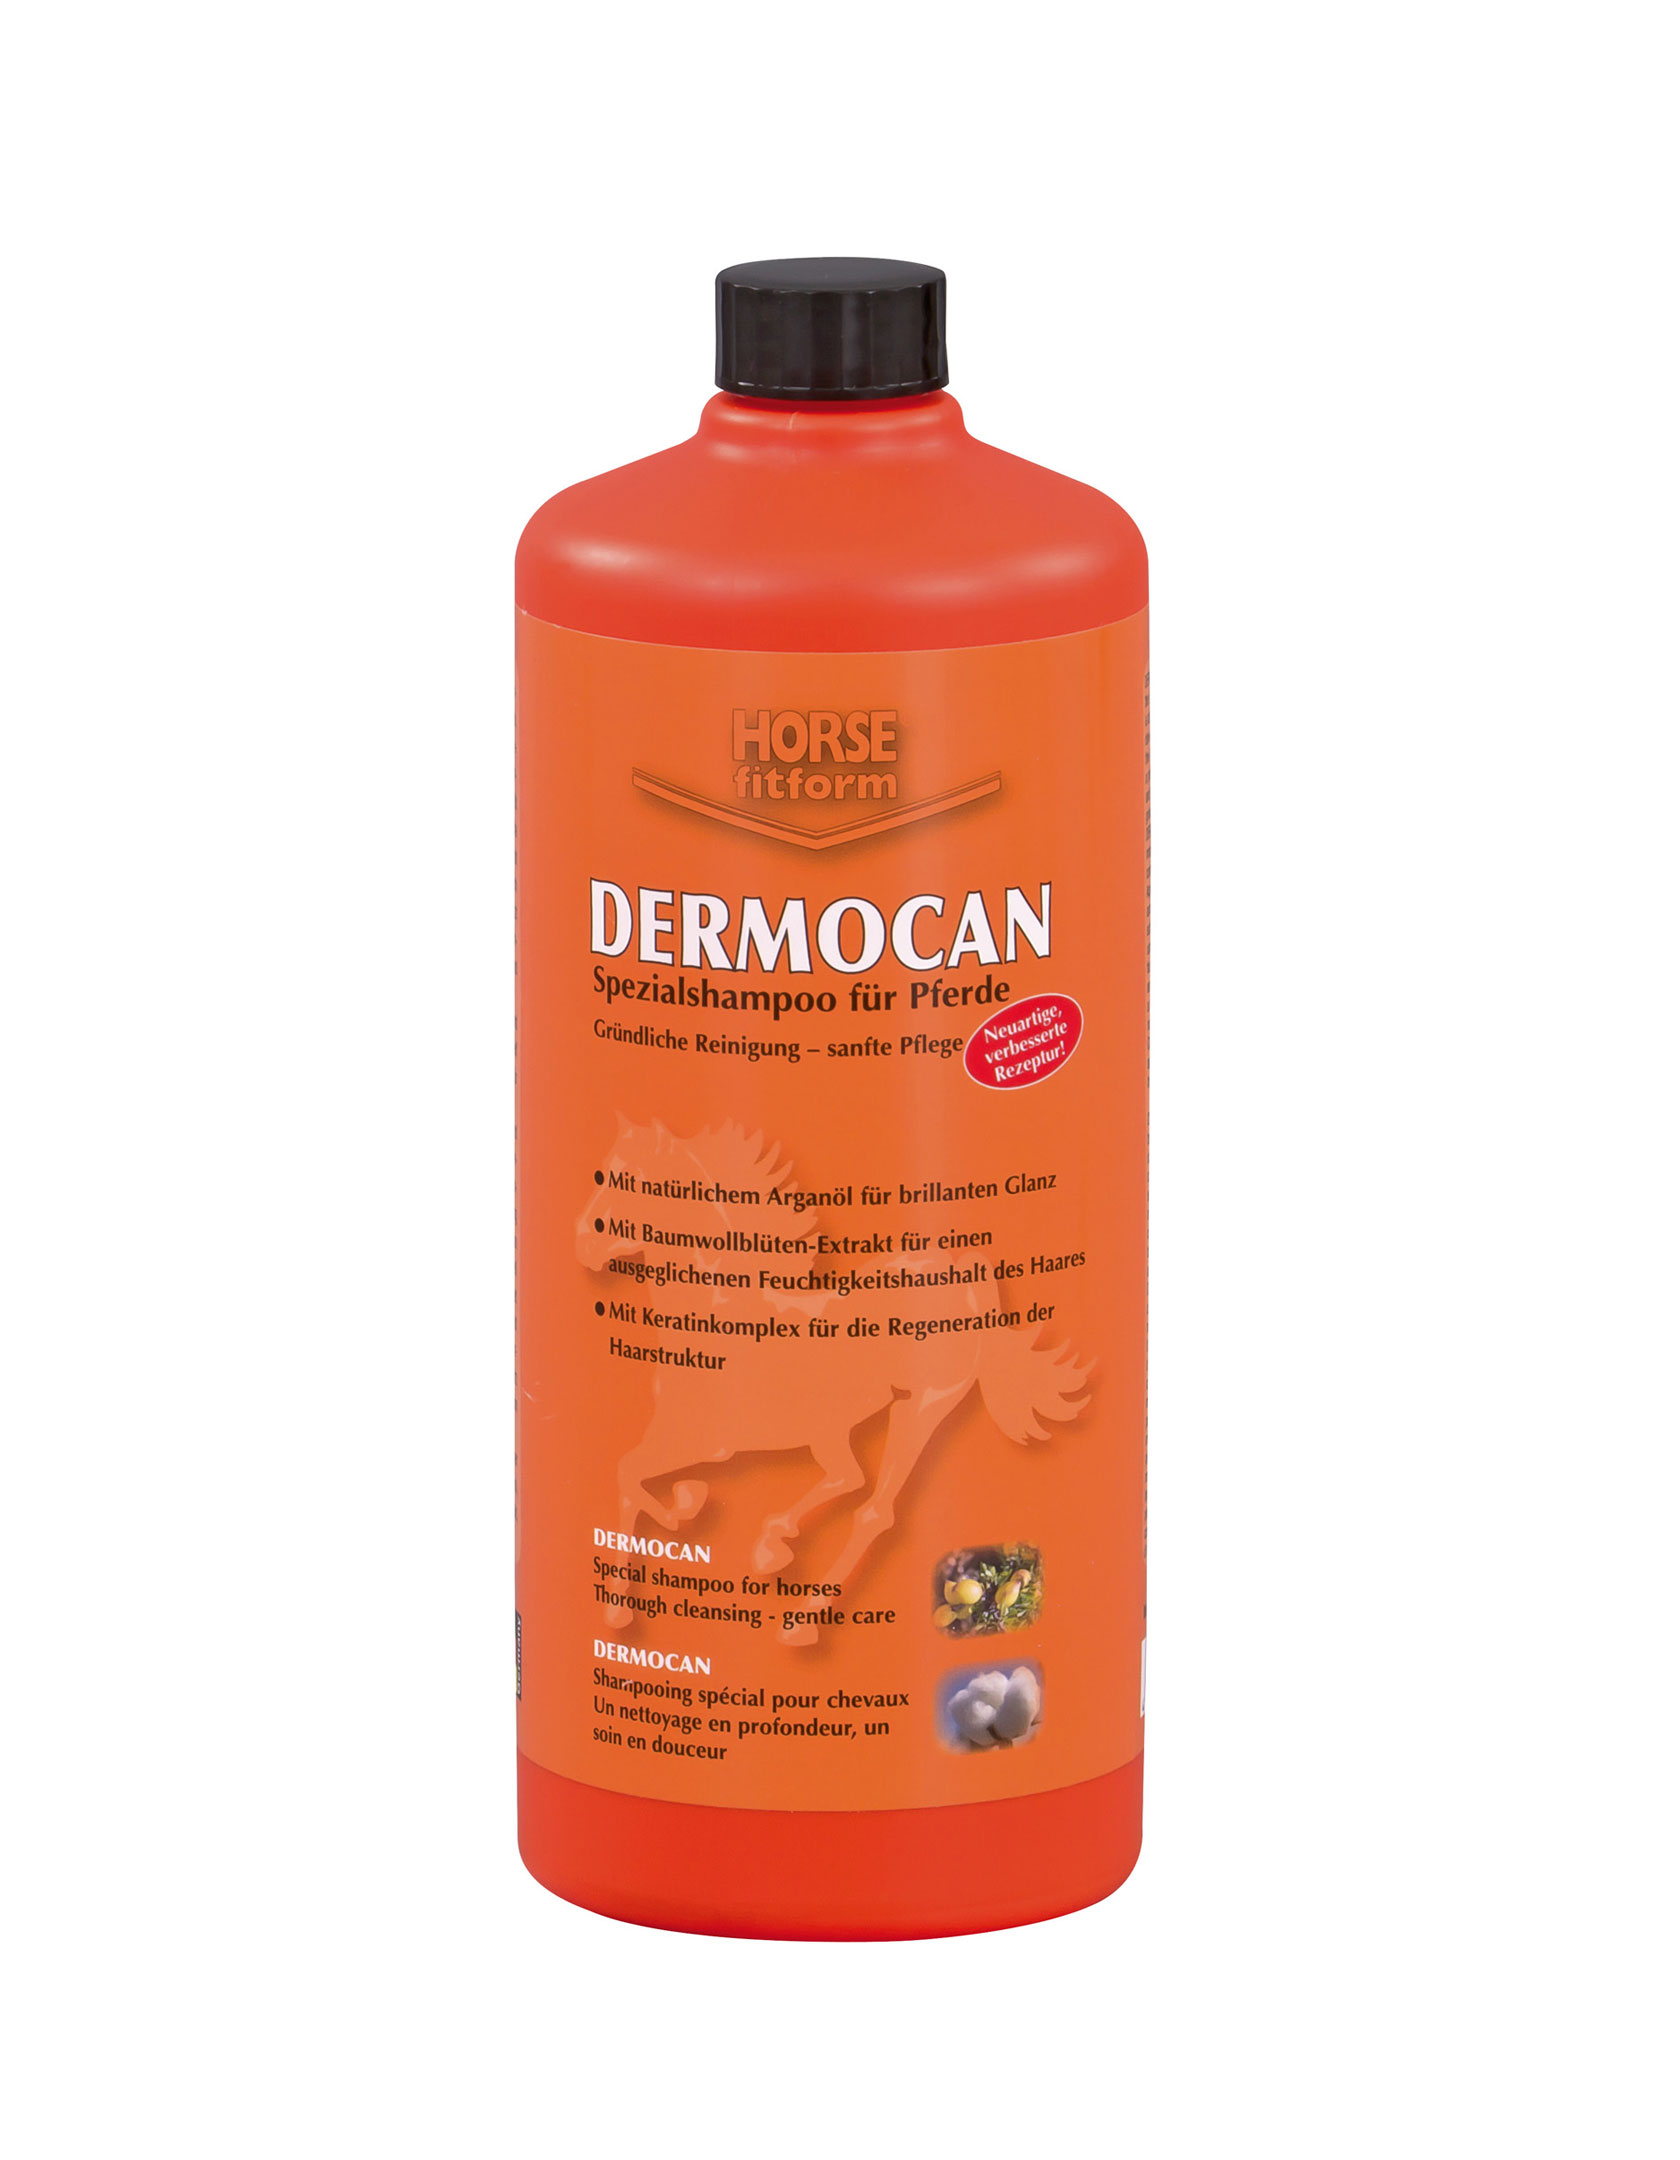 DERMOCAN Pferdeshampoo - 1000 ml